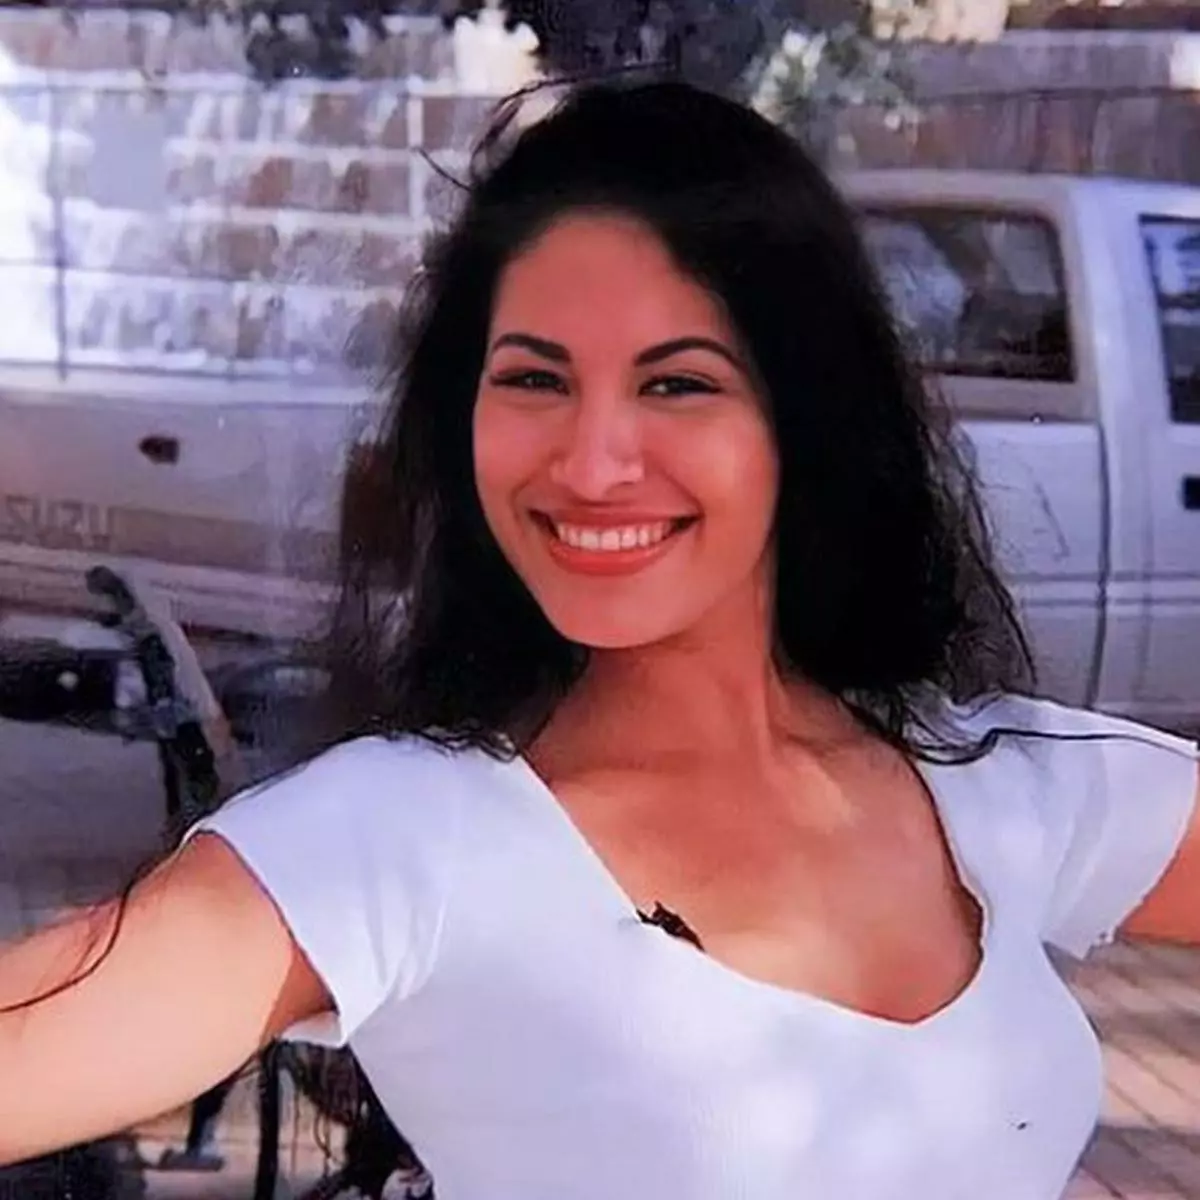 Selena Quintanilla-Pérez